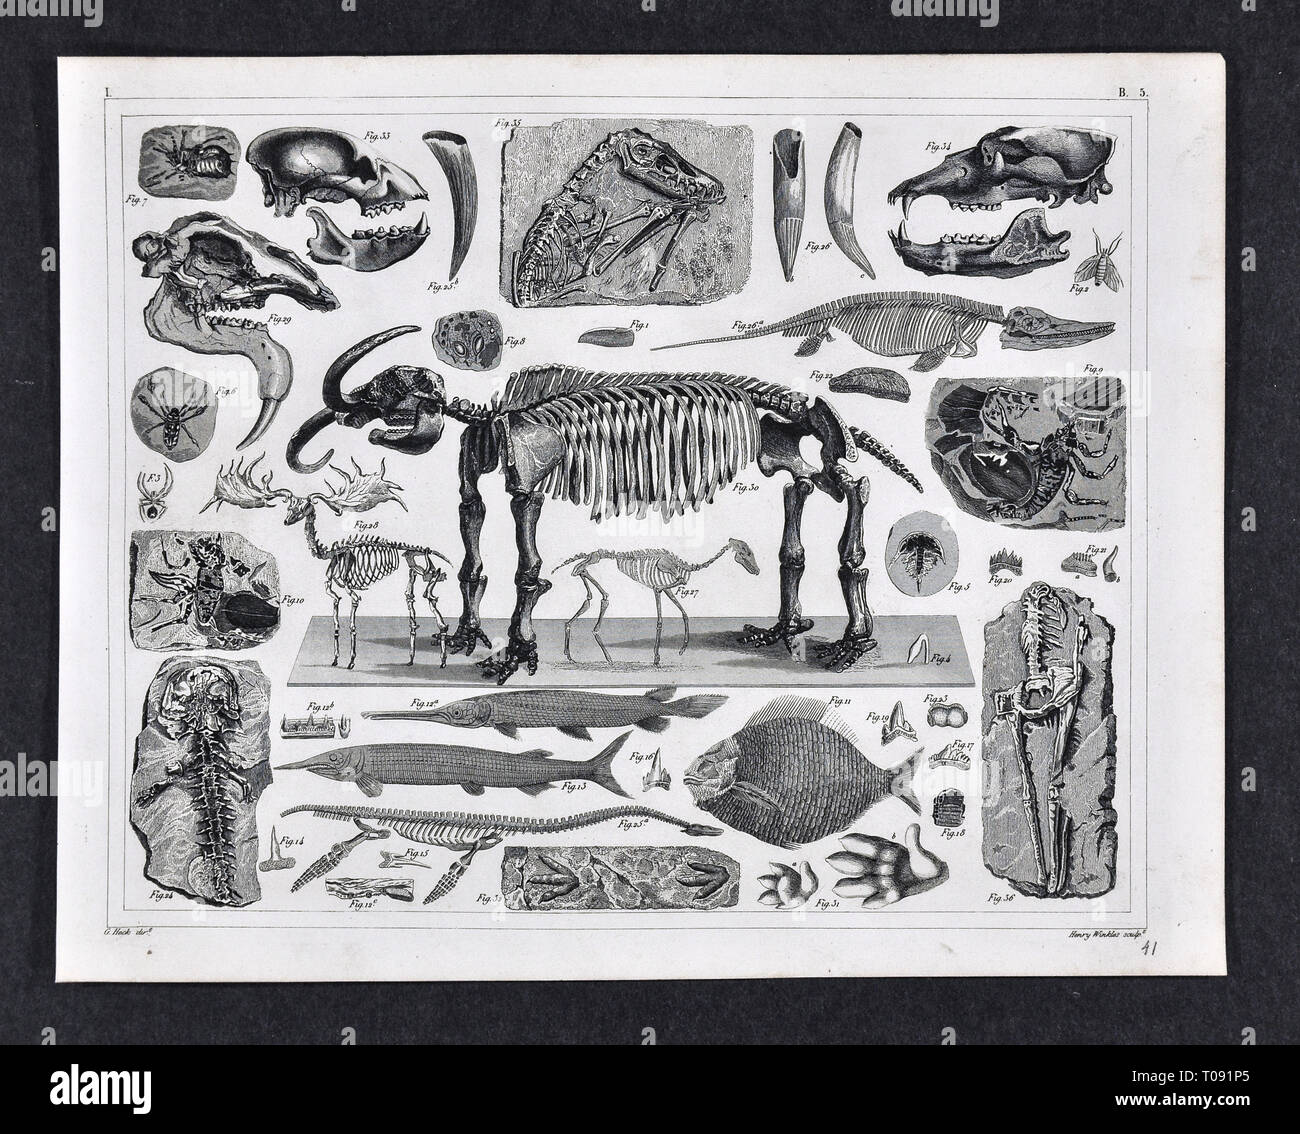 1849 Bilder Atlas Drucken - Prähistorische Fossilien aus der Erdneuzeit Pleistocene Periode einschließlich Mastodon, Saber Tooth Tiger, Spinnentiere, Fisch und andere ausgestorbene Arten Stockfoto